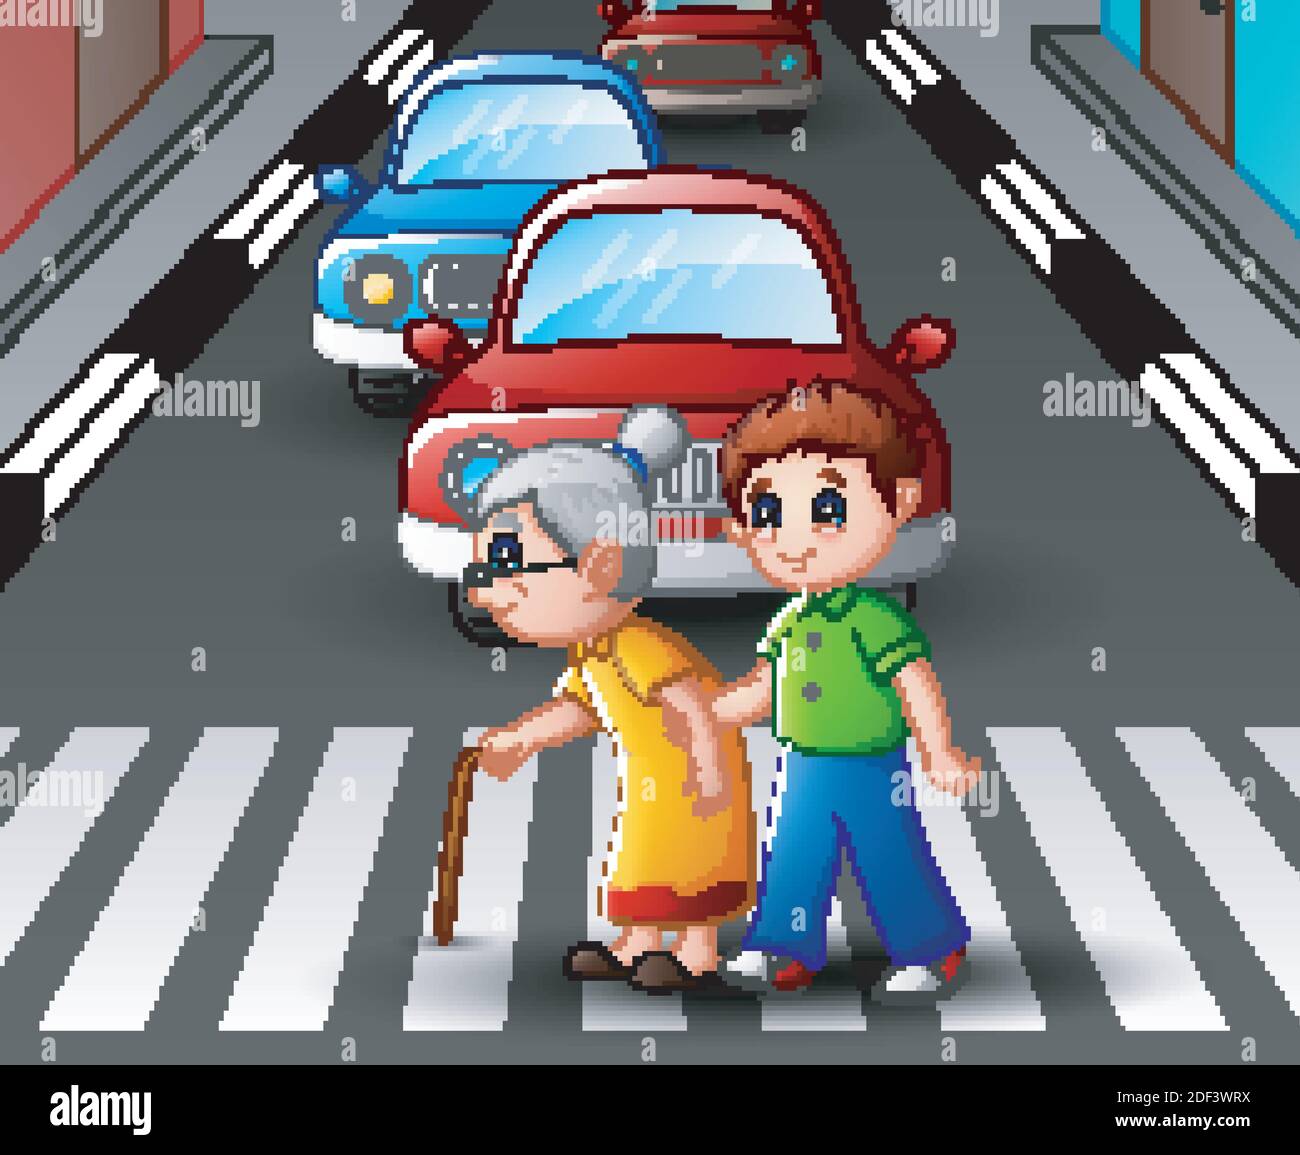 Vector illustration of Cartoon boy helps grandma crossing the street Stock Vector